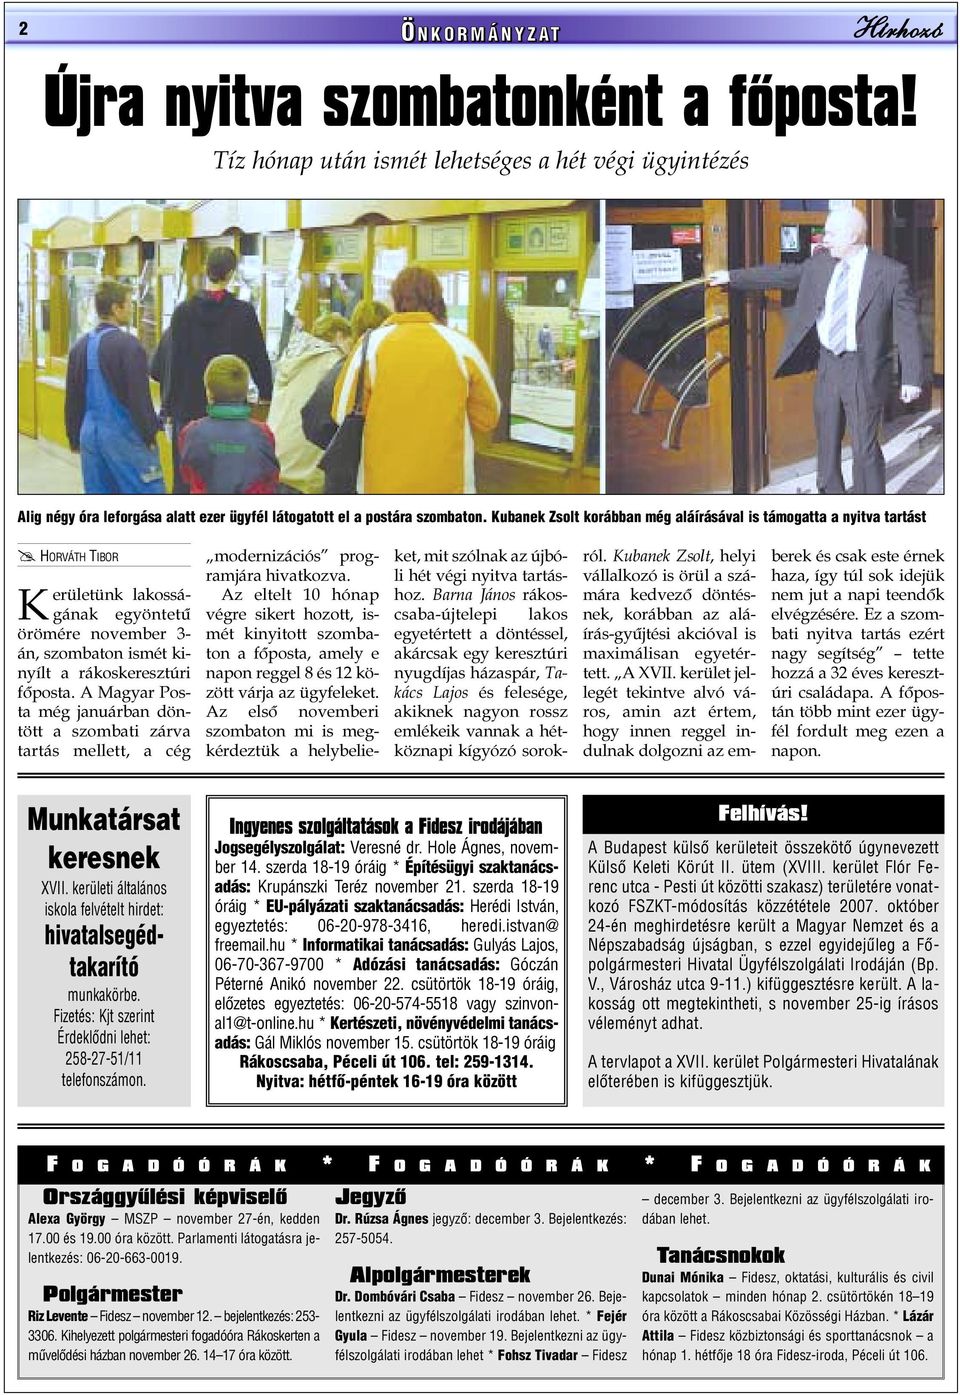 A Magyar Posta még januárban döntött a szombati zárva tartás mellett, a cég modernizációs programjára hivatkozva.